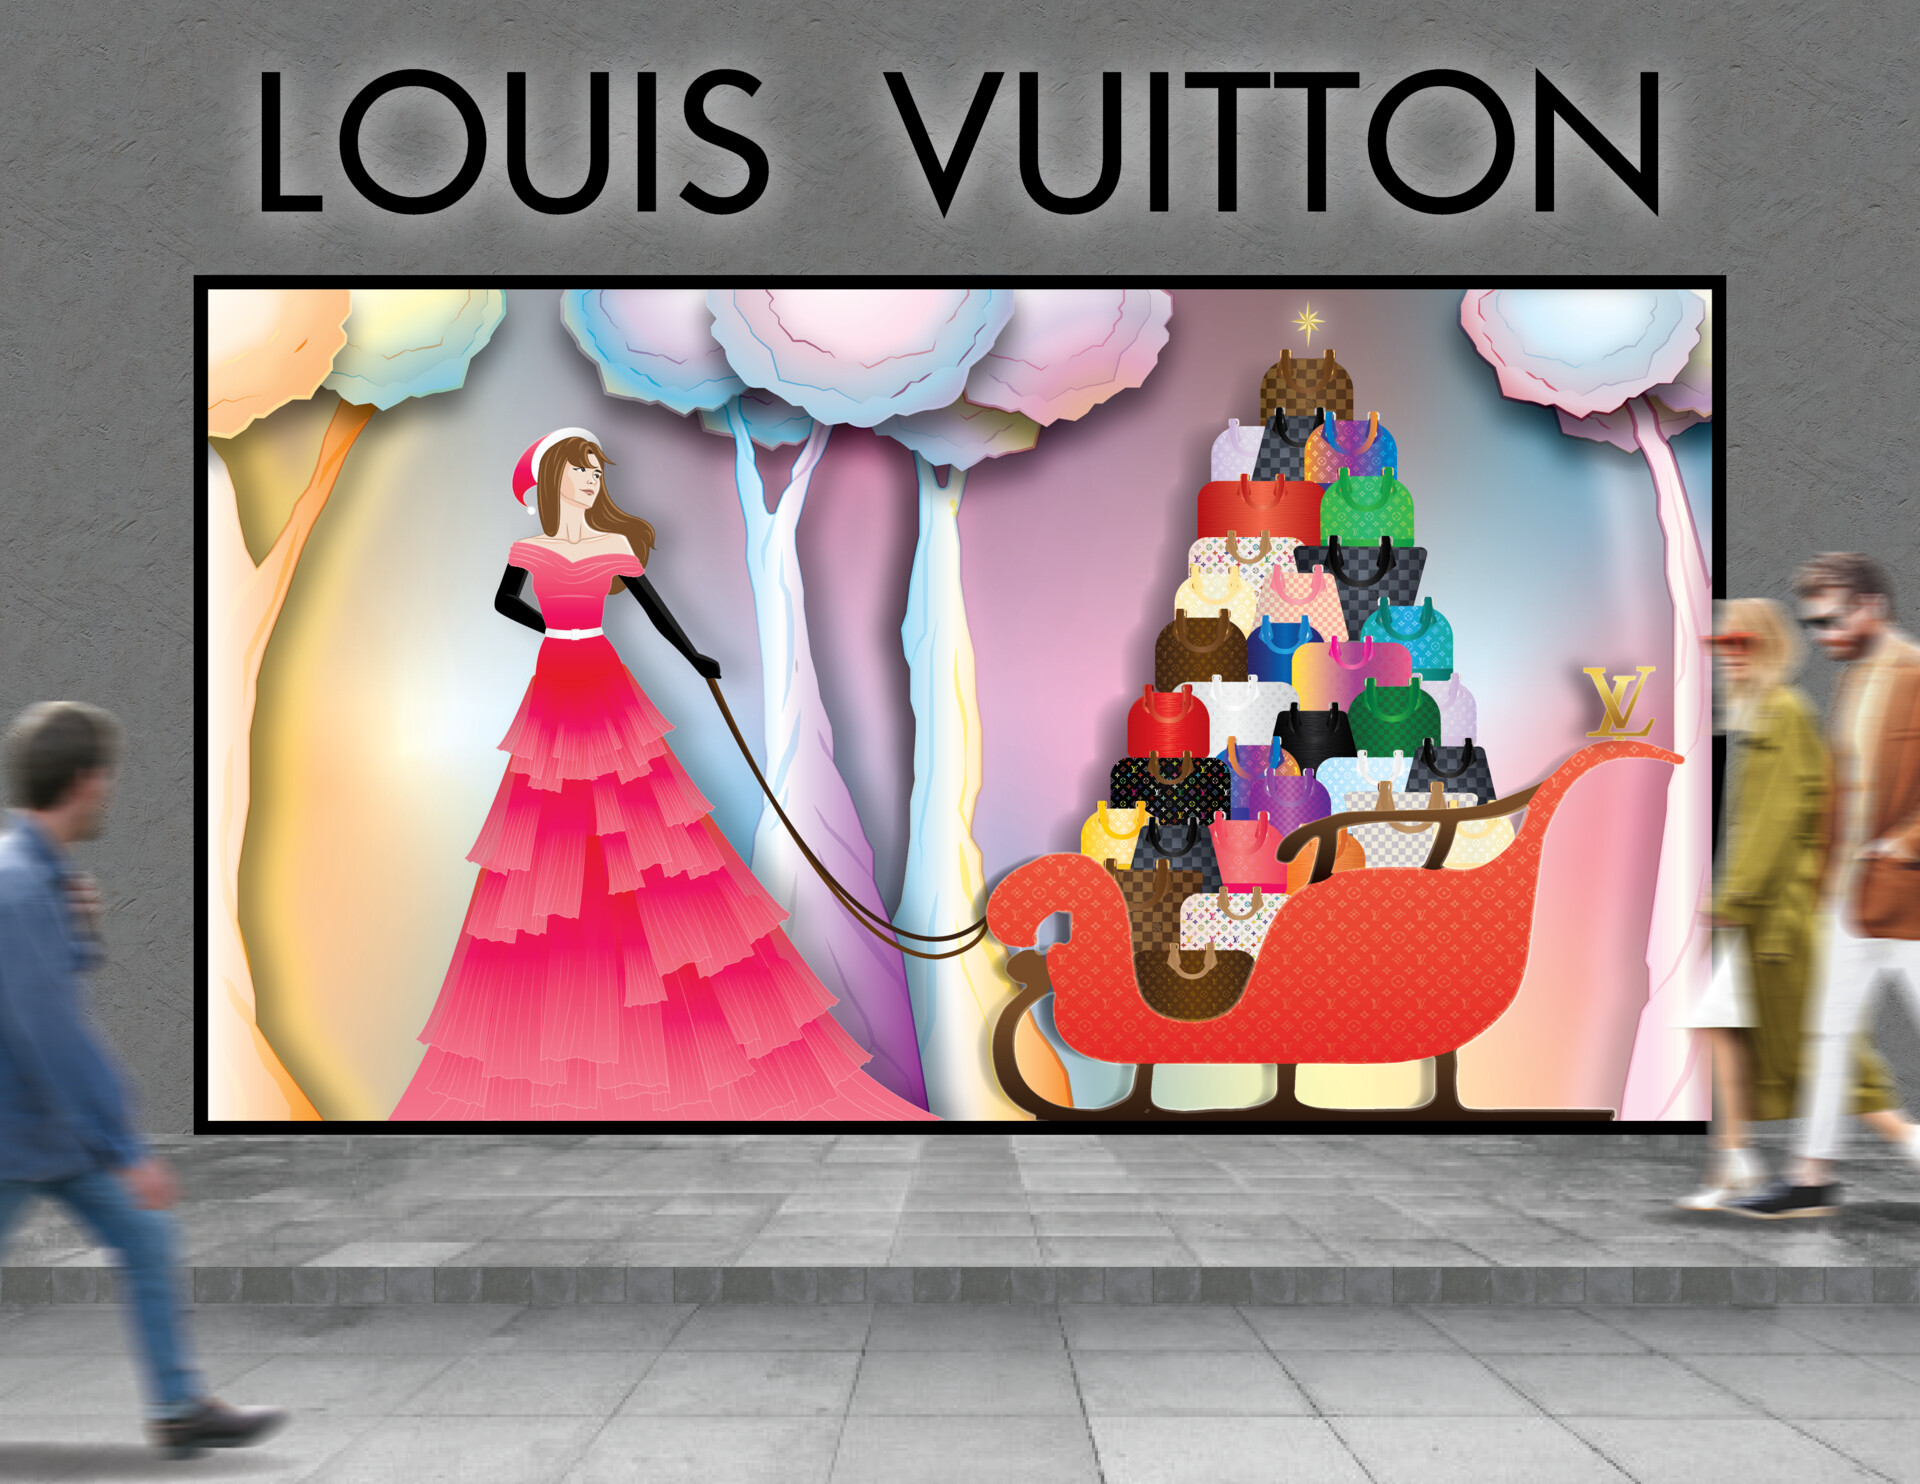 ArtStation - Louis Vuitton Window Display Concept